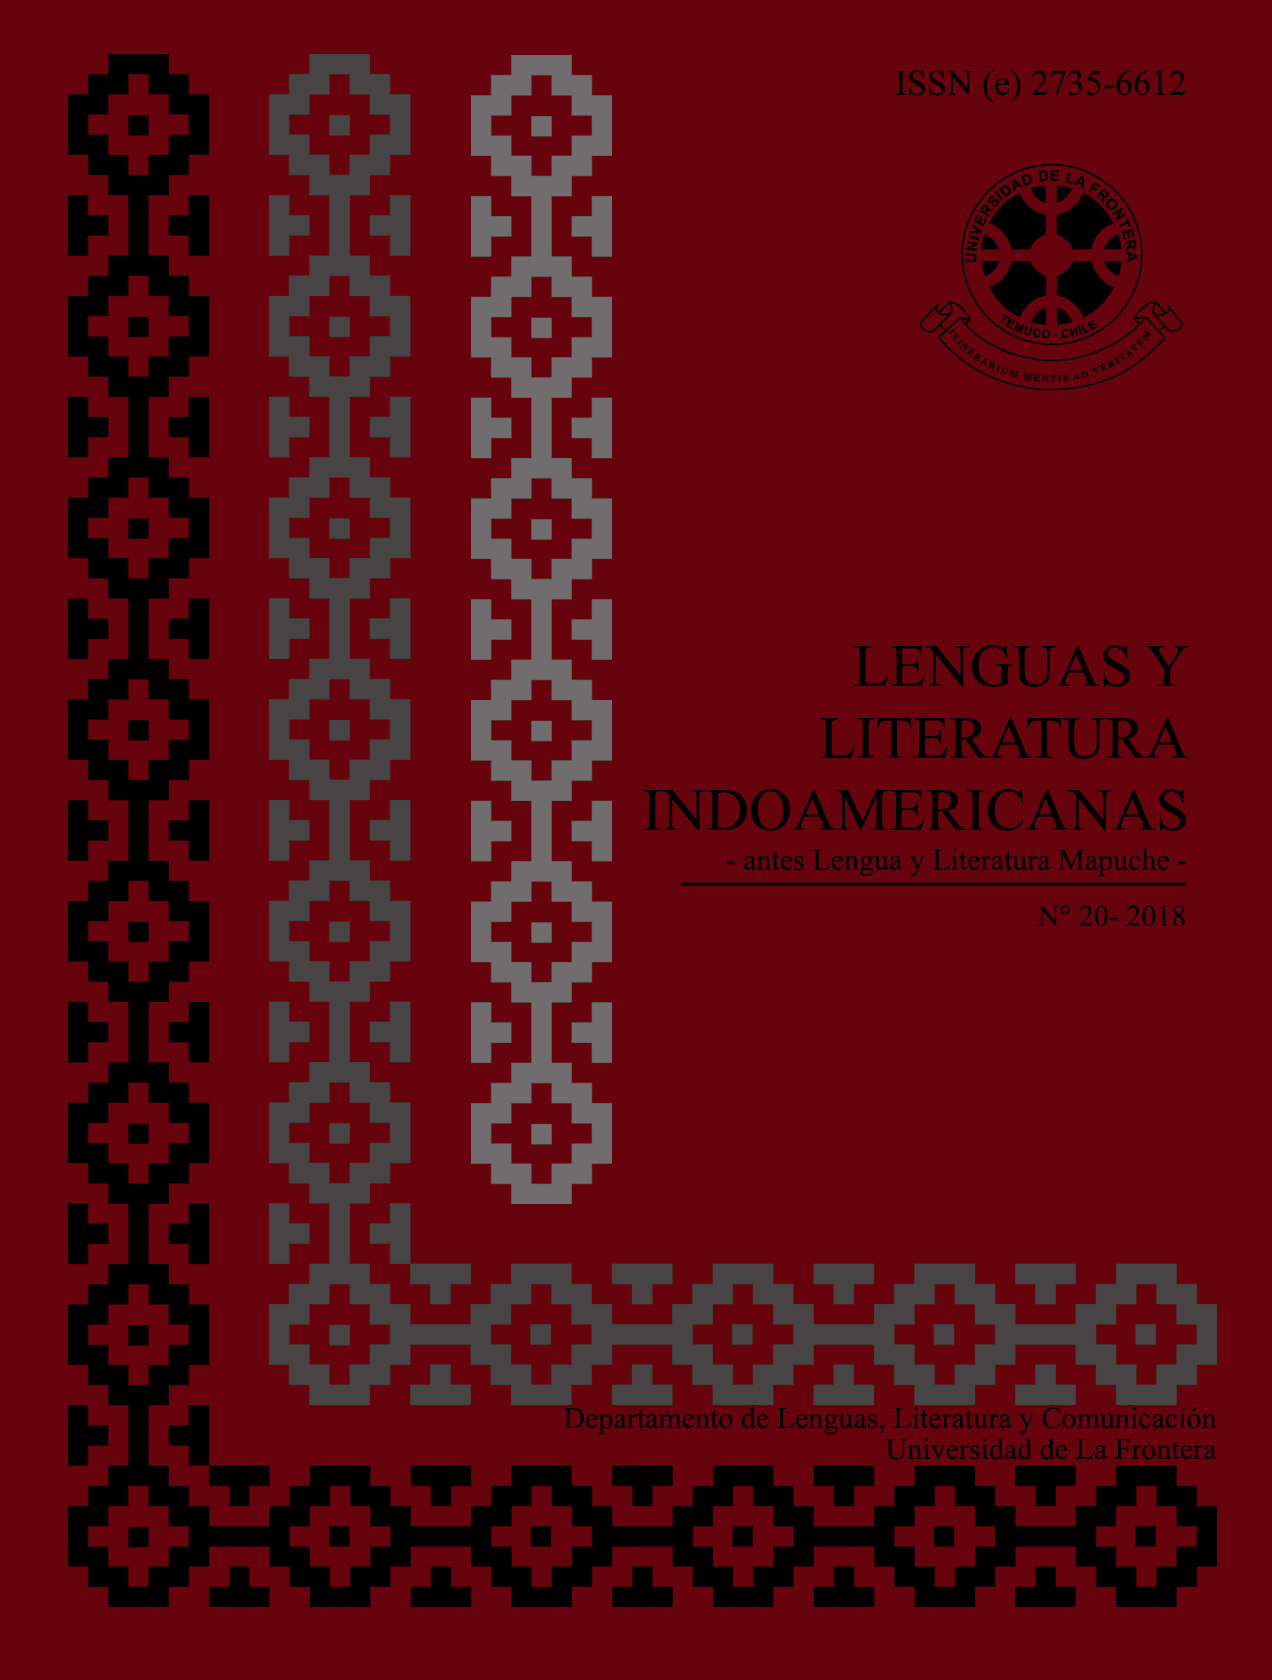 					Ver Vol. 20 Núm. 1 (2018): Revista de Lenguas y Literatura Indoamericanas (RLLI) 
				